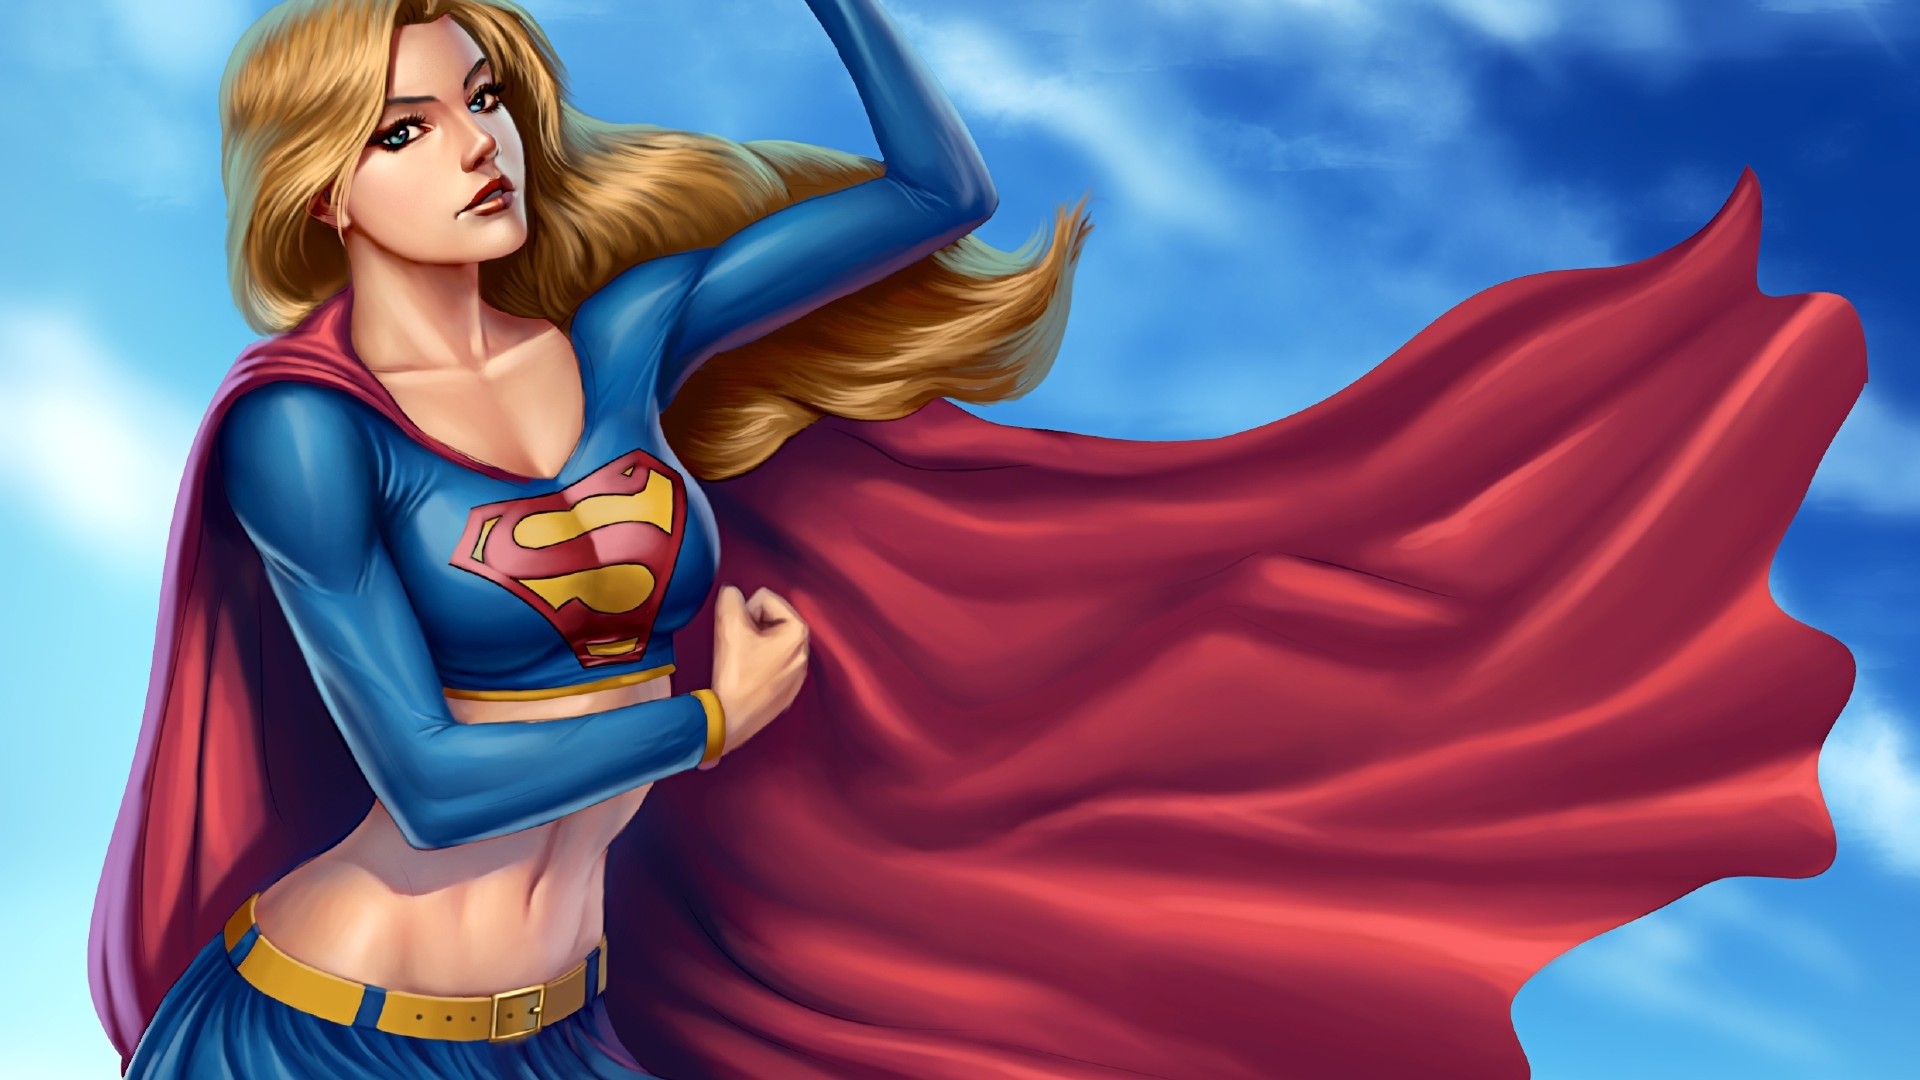 Wallpaper Superhero Supergirl Dc Ics Kara Zor El Kryptonian